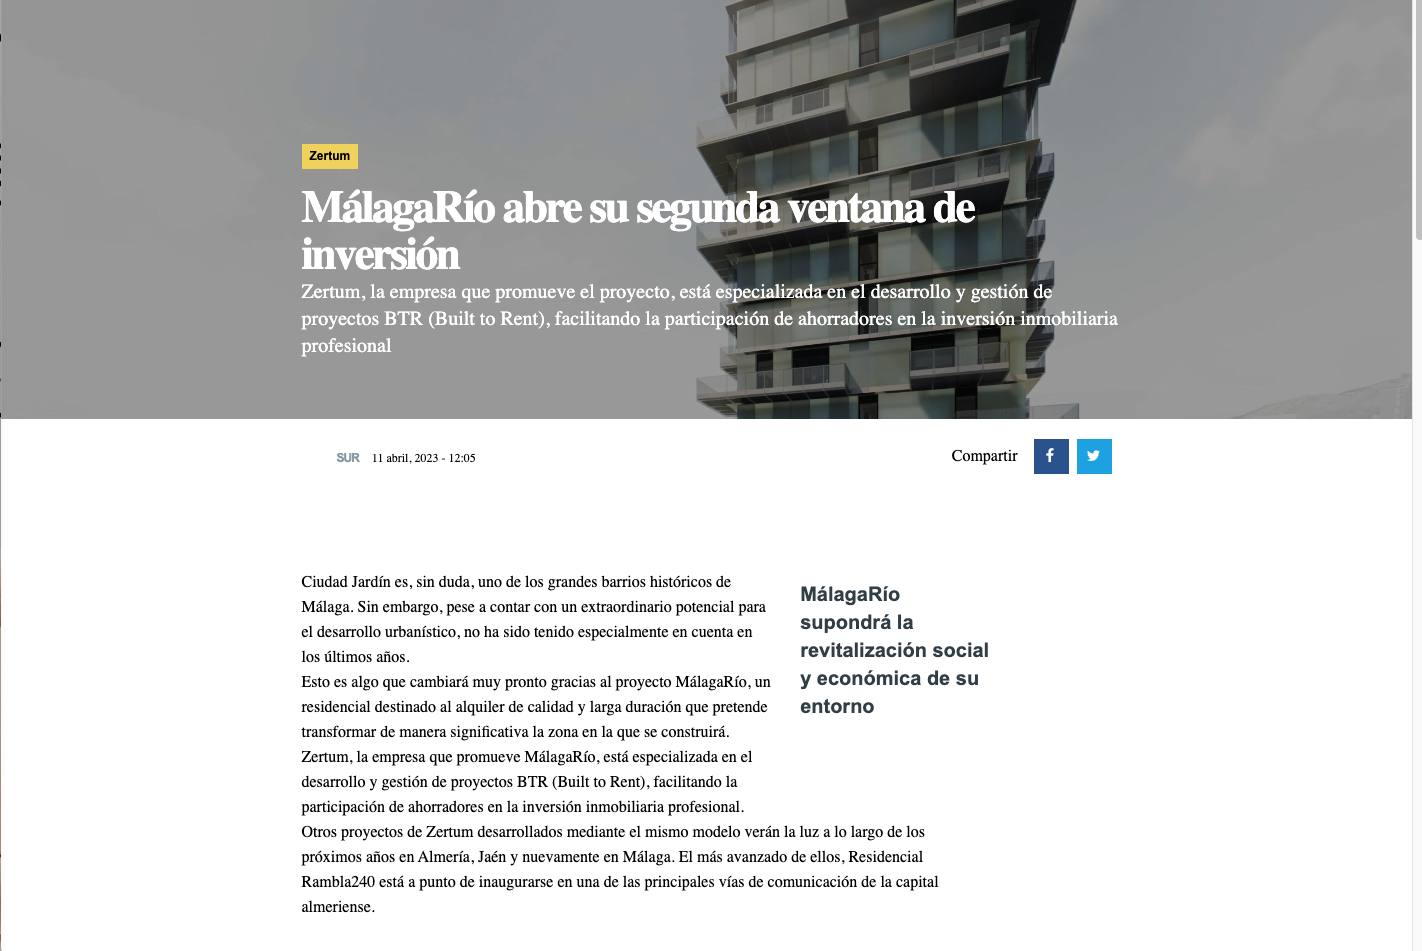 MálagaRío abre su segunda ventana de inversión